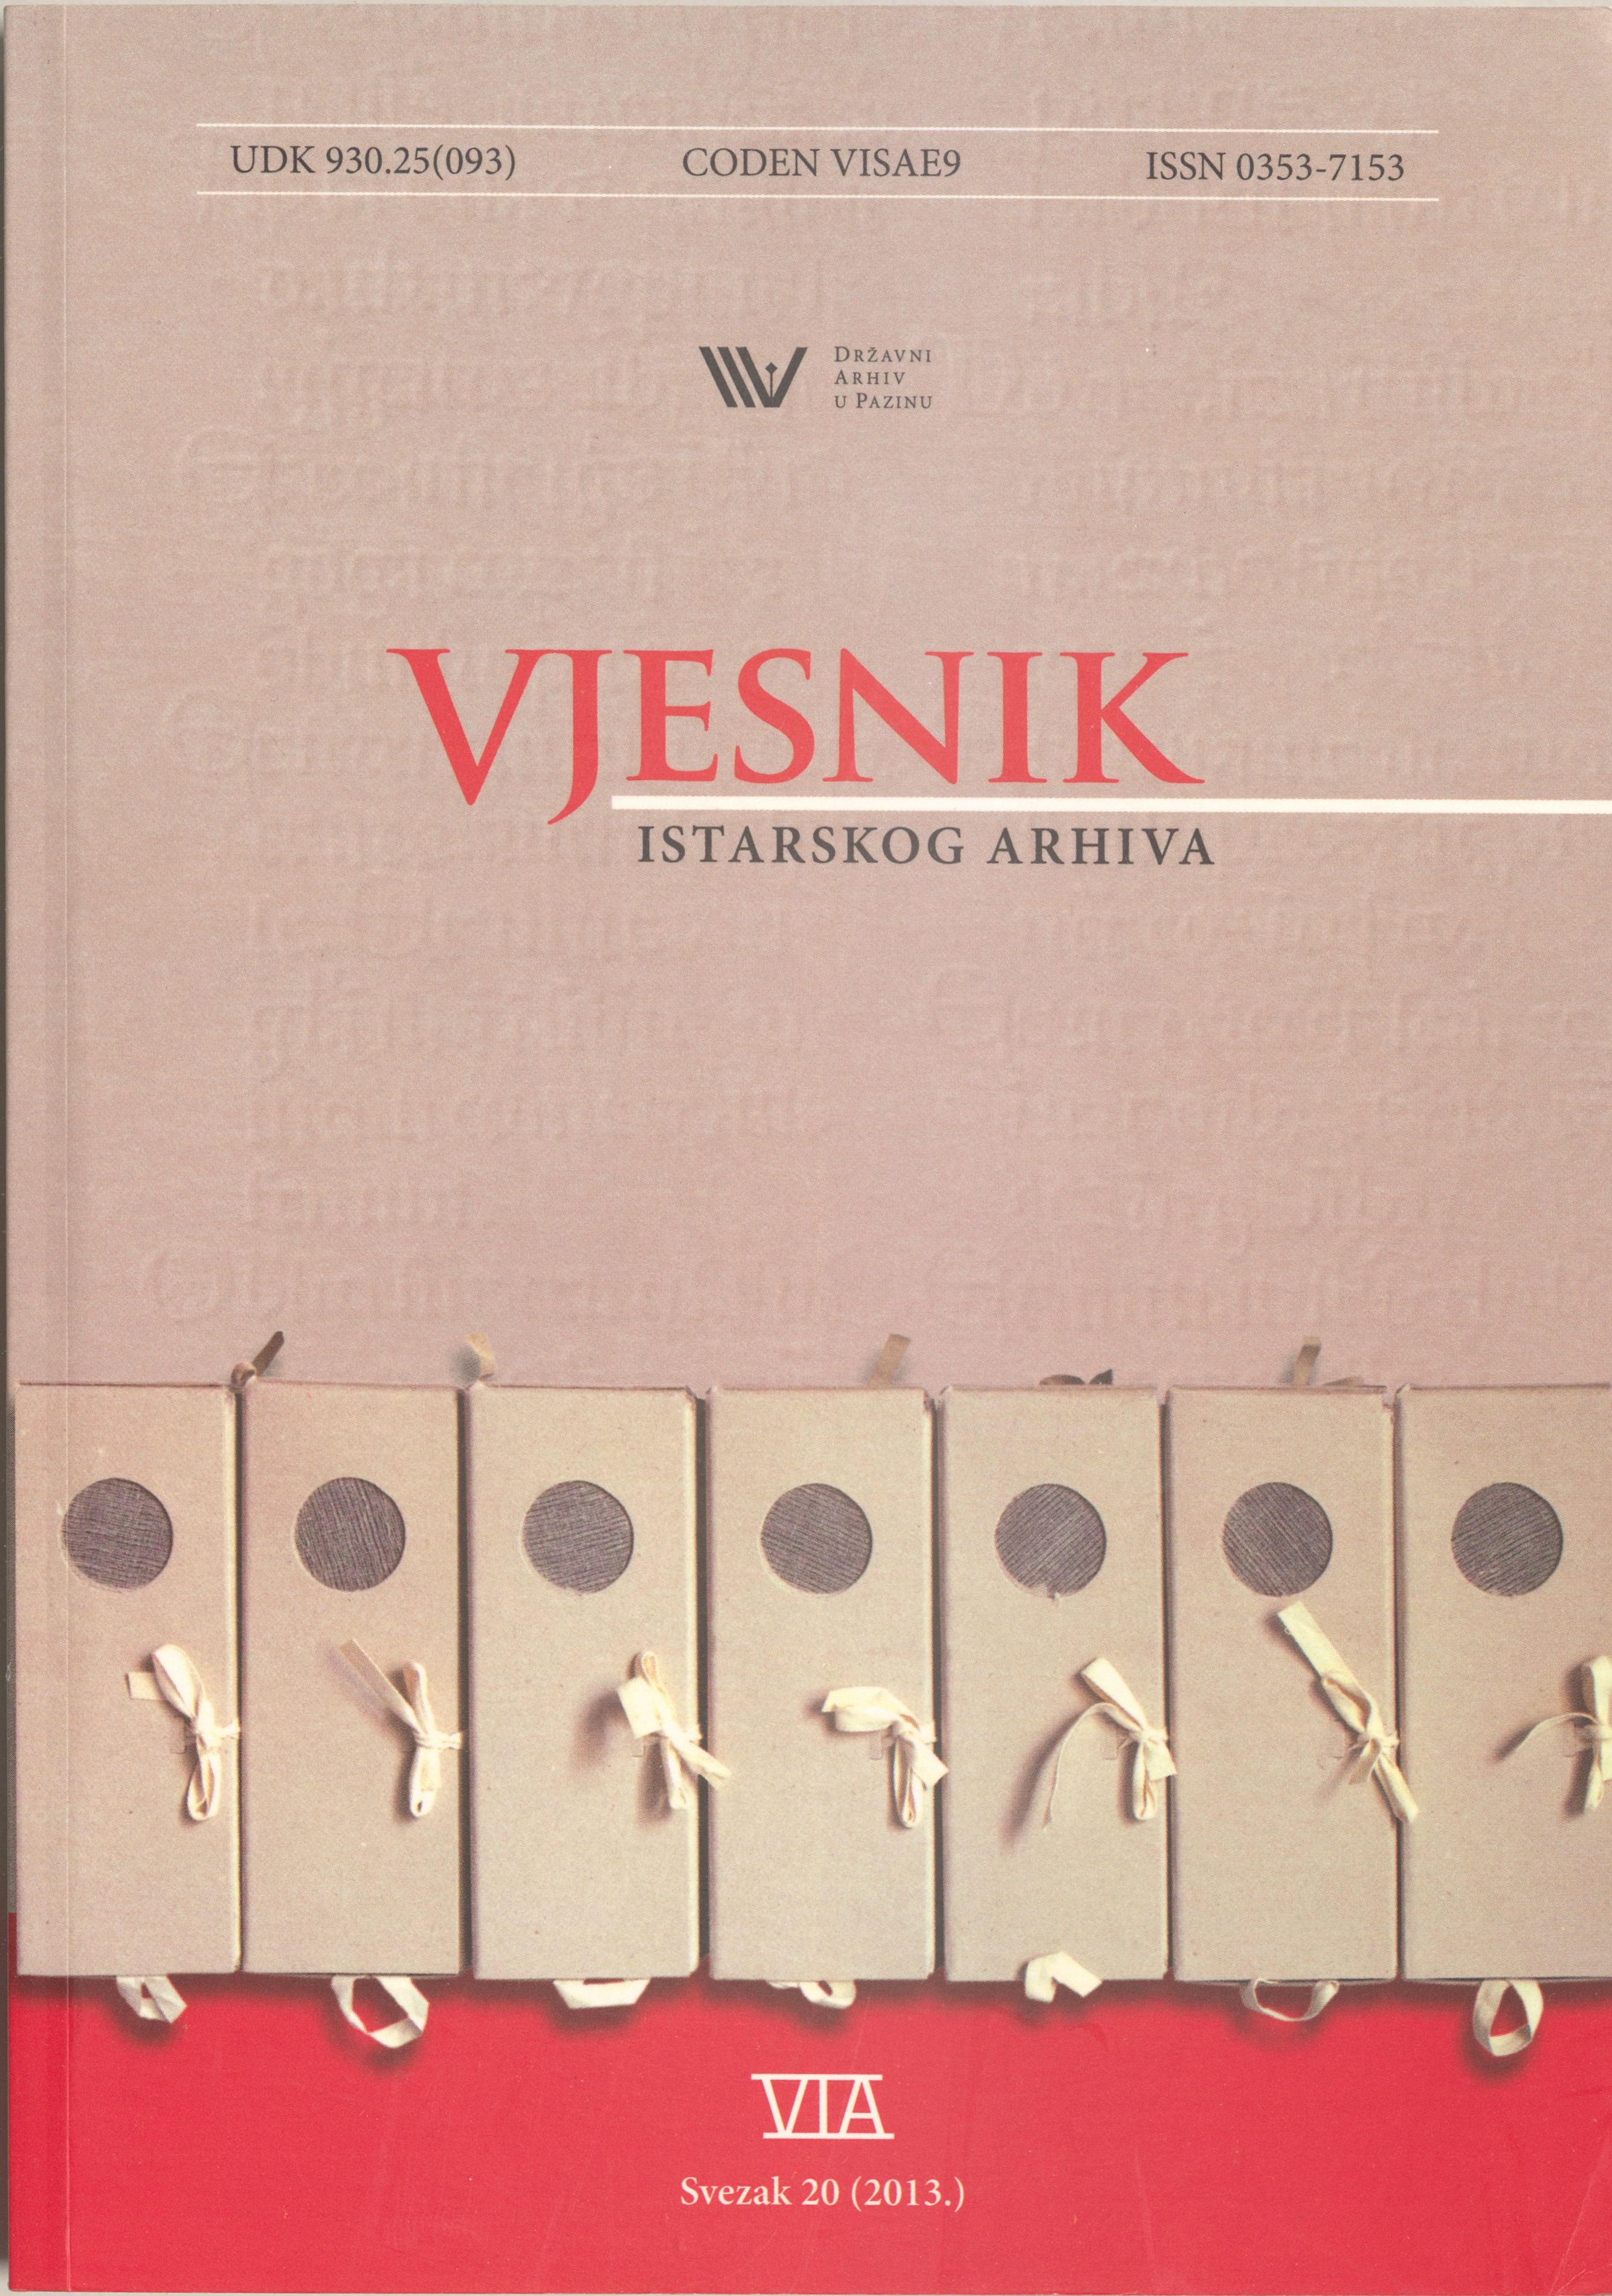 					Visualizza Vjesnik istarskog arhiva sv. 20 (2013.)
				